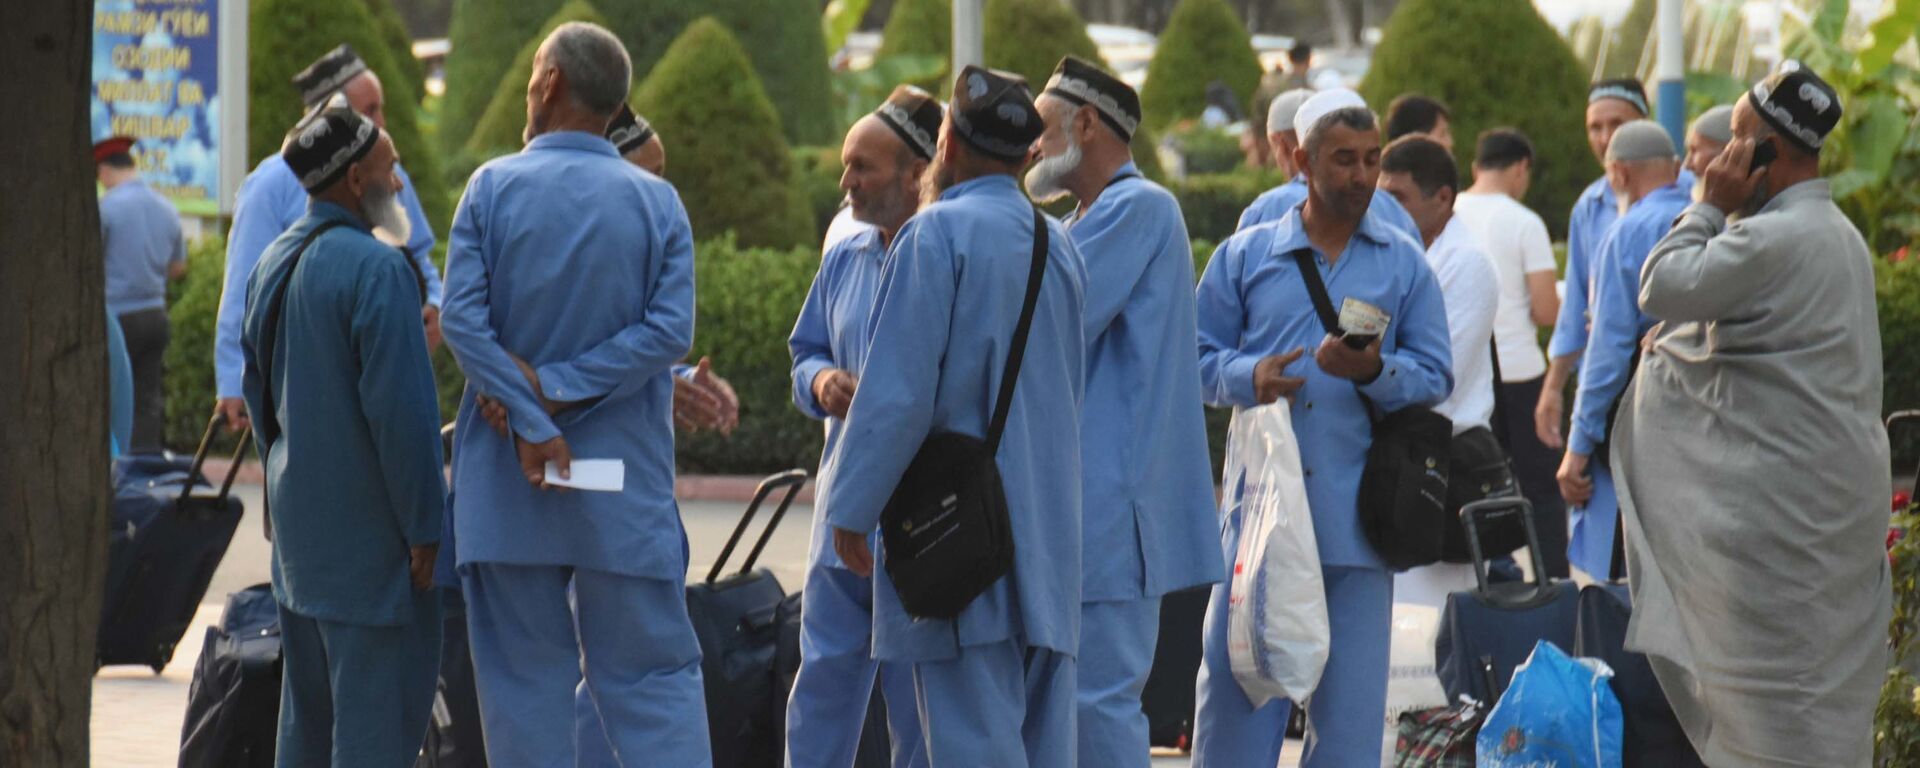 Таджикские мусульмане отправляются в хадж из аэропорта в Душанбе, архивное фото - Sputnik Тоҷикистон, 1920, 20.06.2022